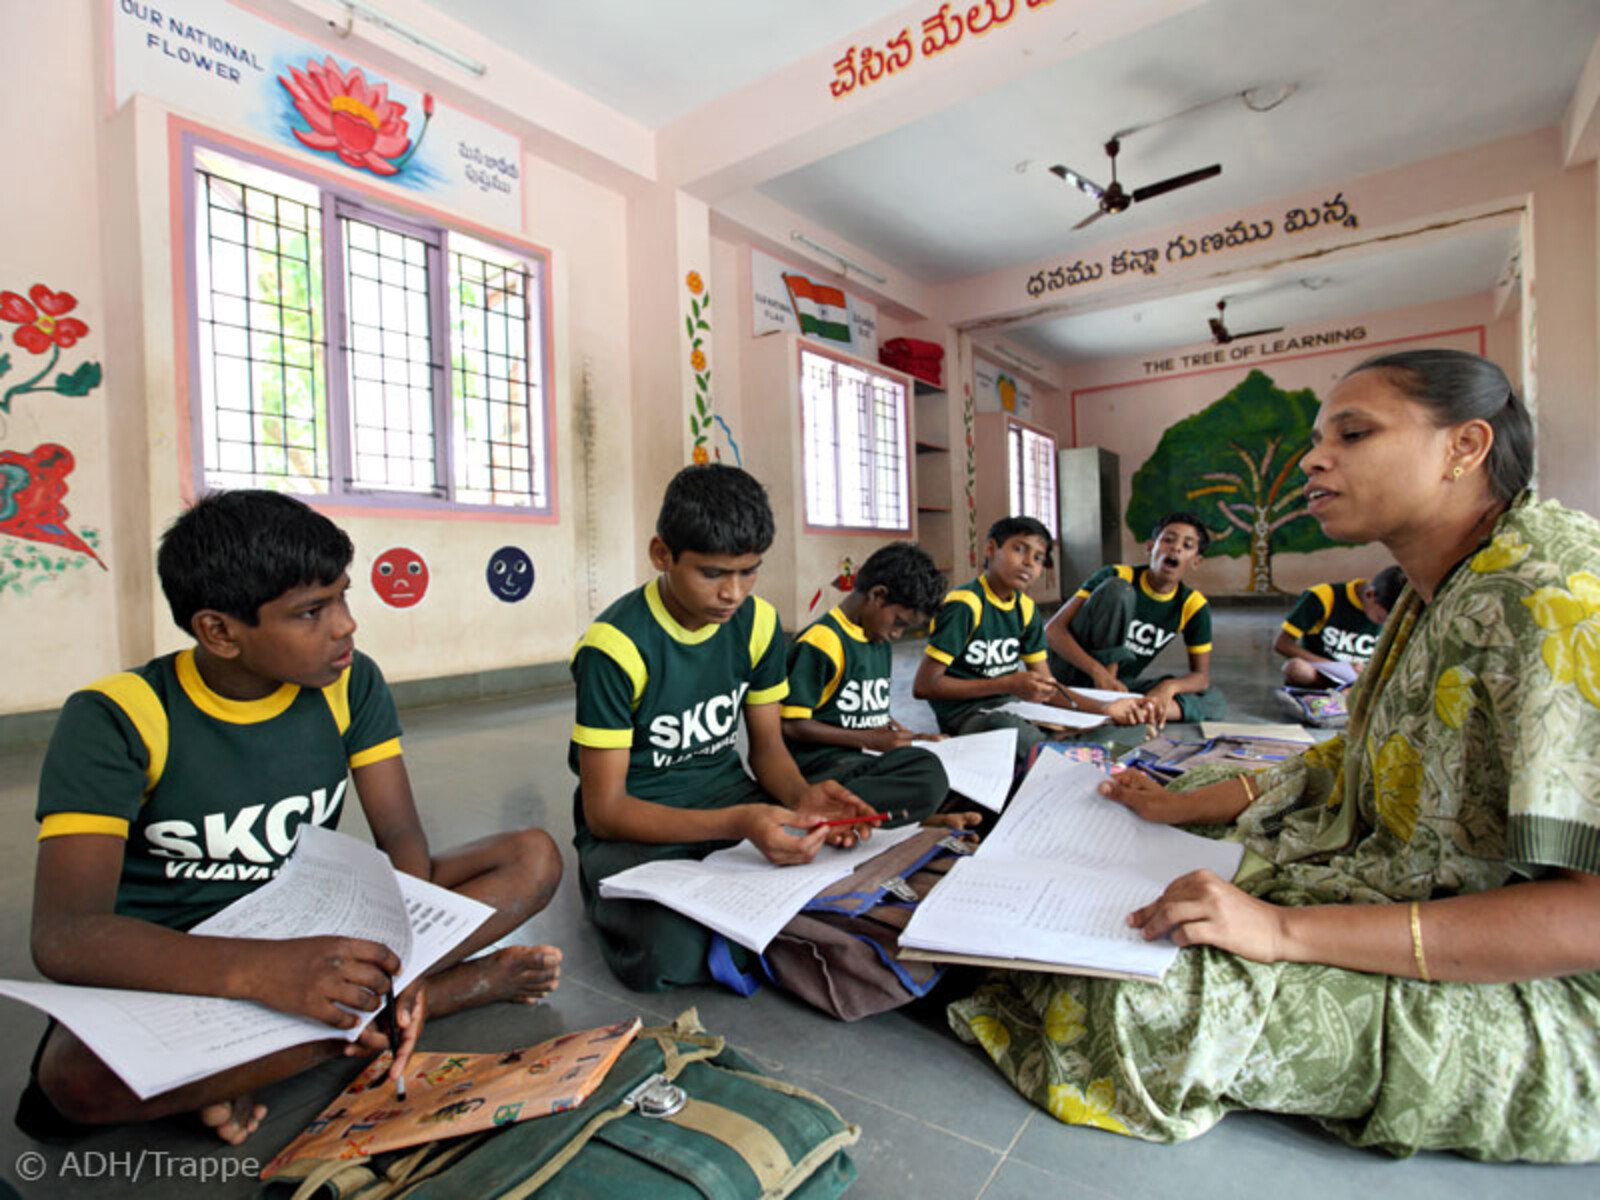 Schulunterricht im SKCV Kinderdorf in Indien, einer Einrichtung für Straßenkinder gefördert durch die Hilfsorganisation SODI, Bündnismitglied von Aktion Deutschland Hilft